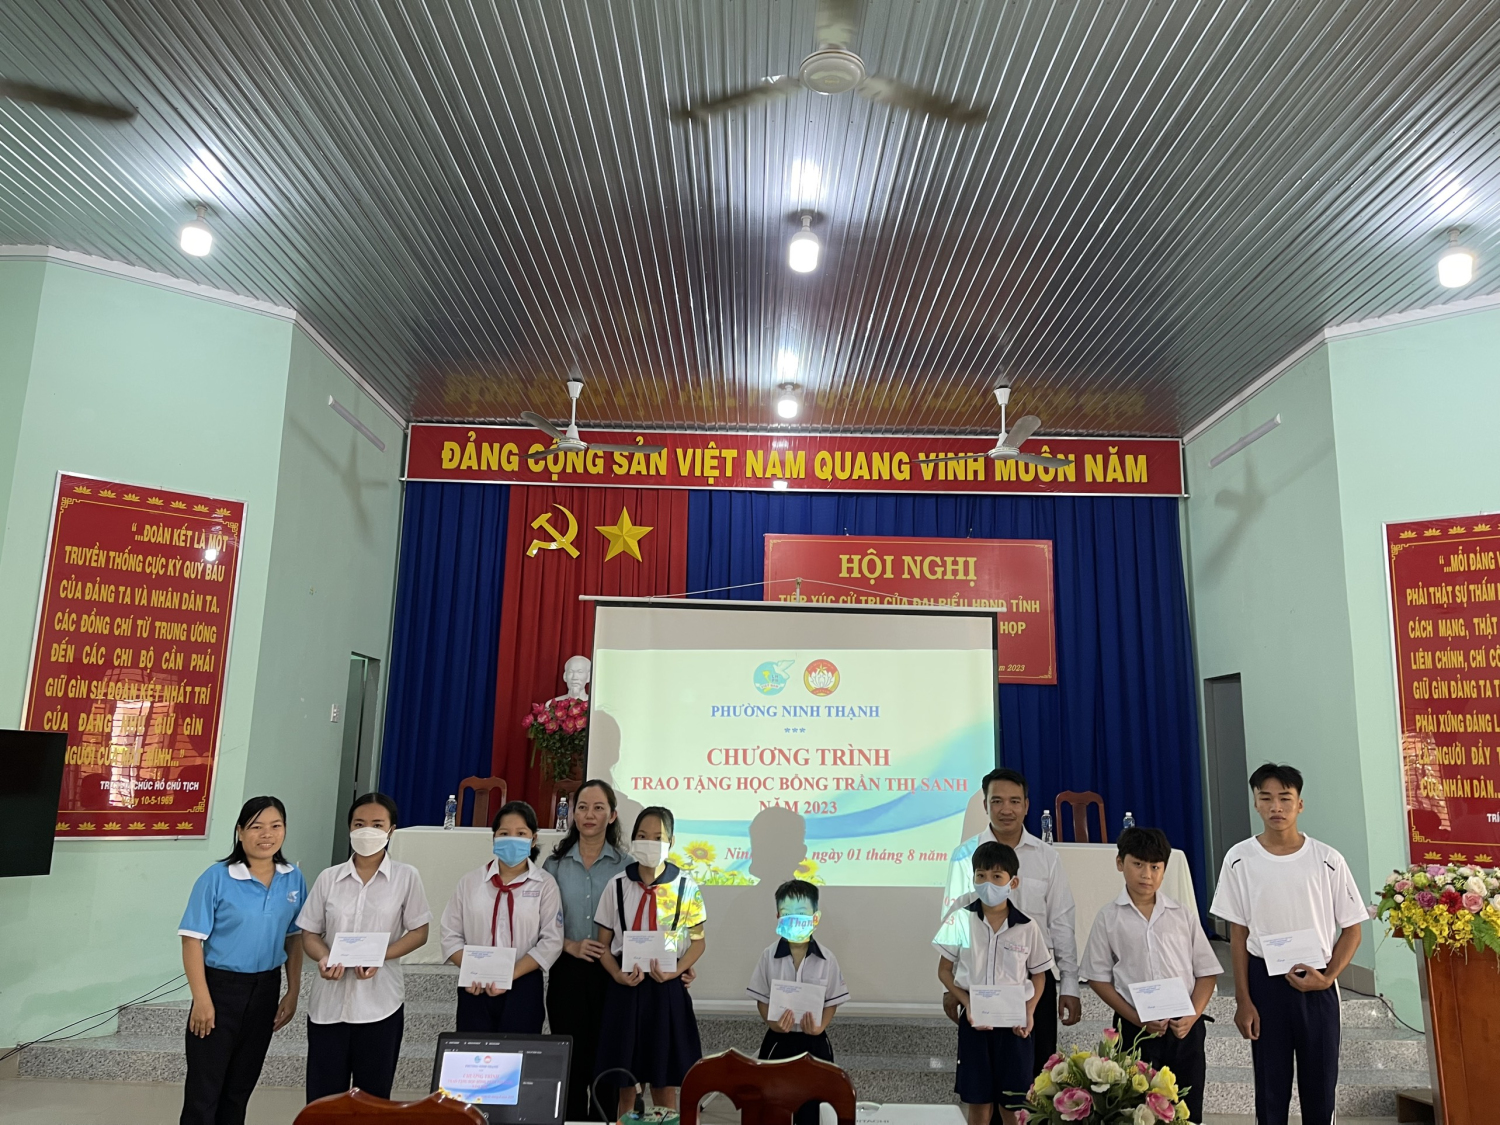 Phường Ninh Thạnh: Trao tặng học bổng Trần Thị Sanh cho học sinh khó khăn trên địa bàn phường